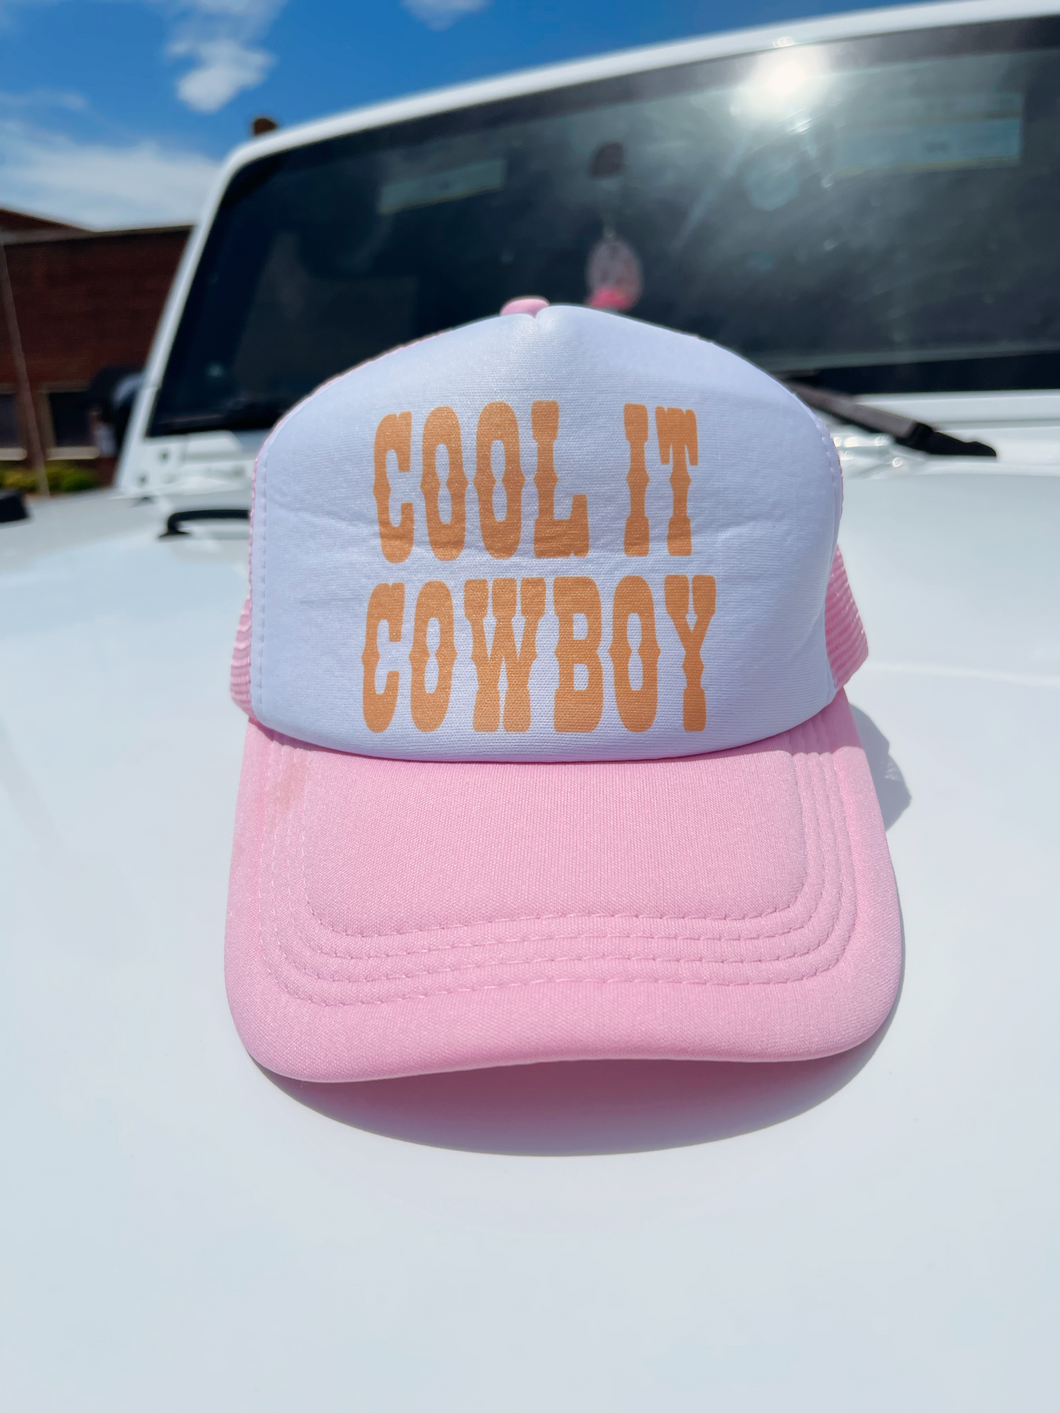 Cool It Cowboy Trucker Hat